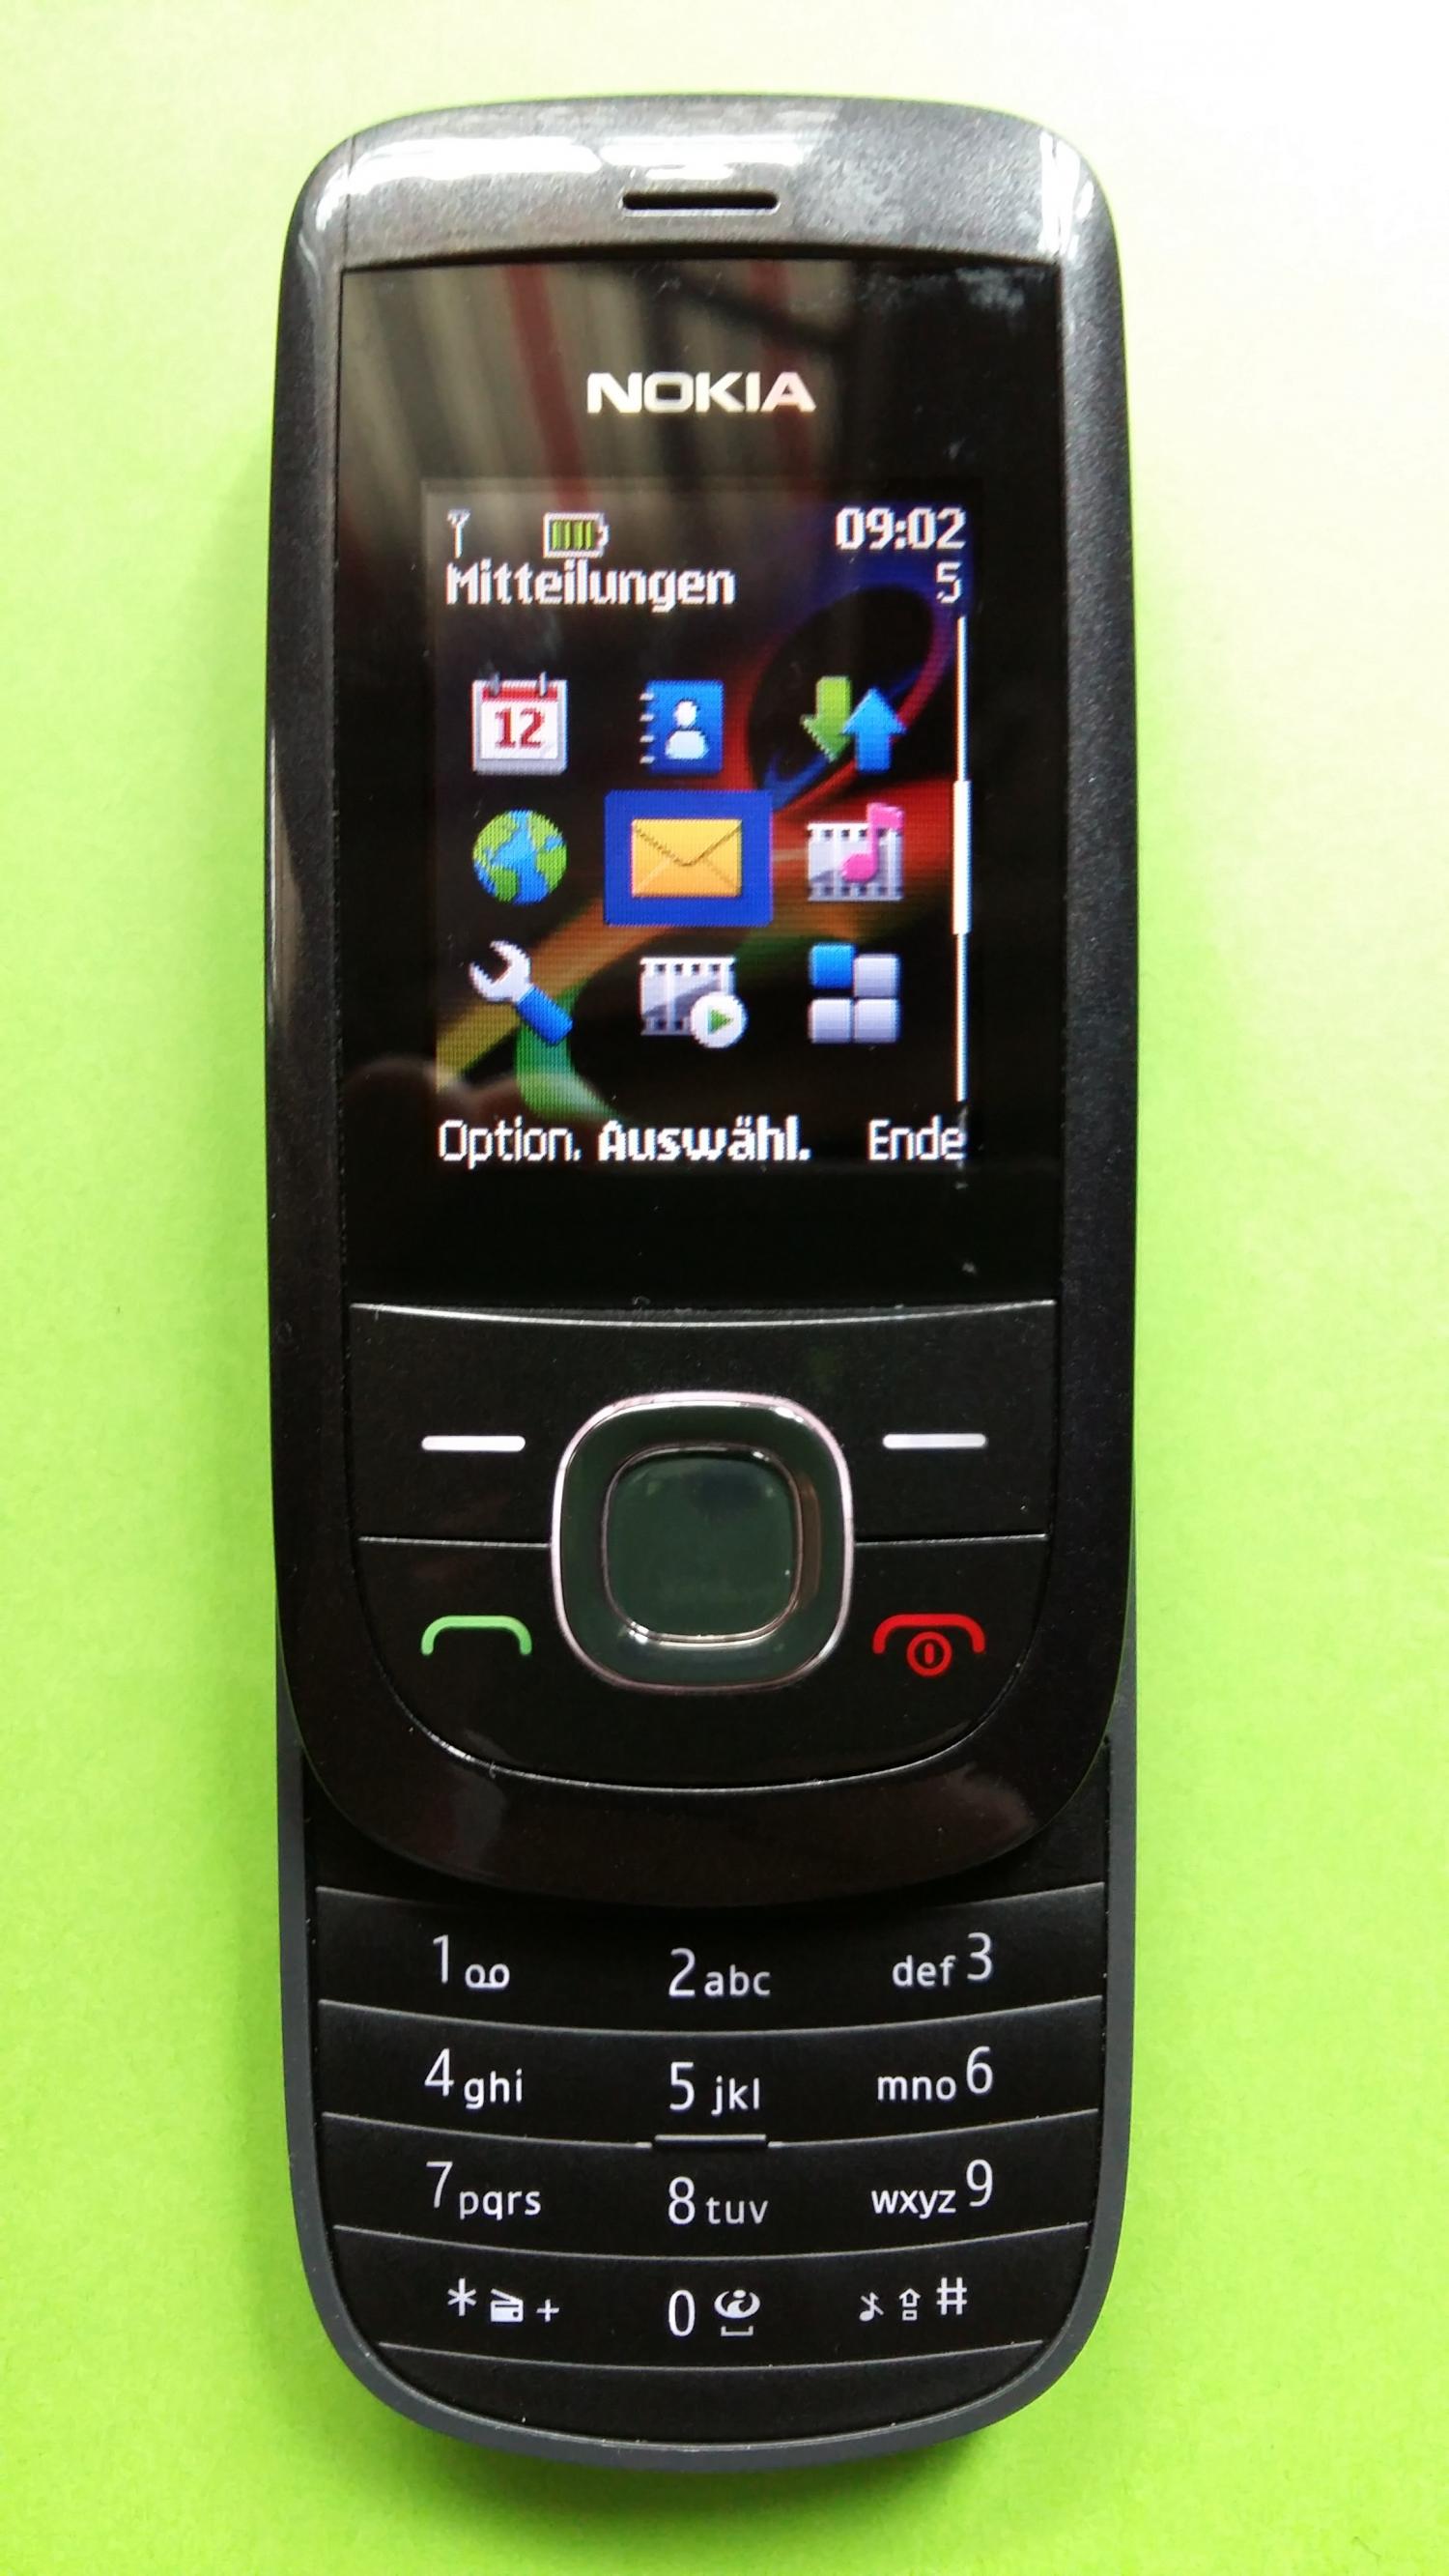 image-7320034-Nokia 2220S (2)2.jpg